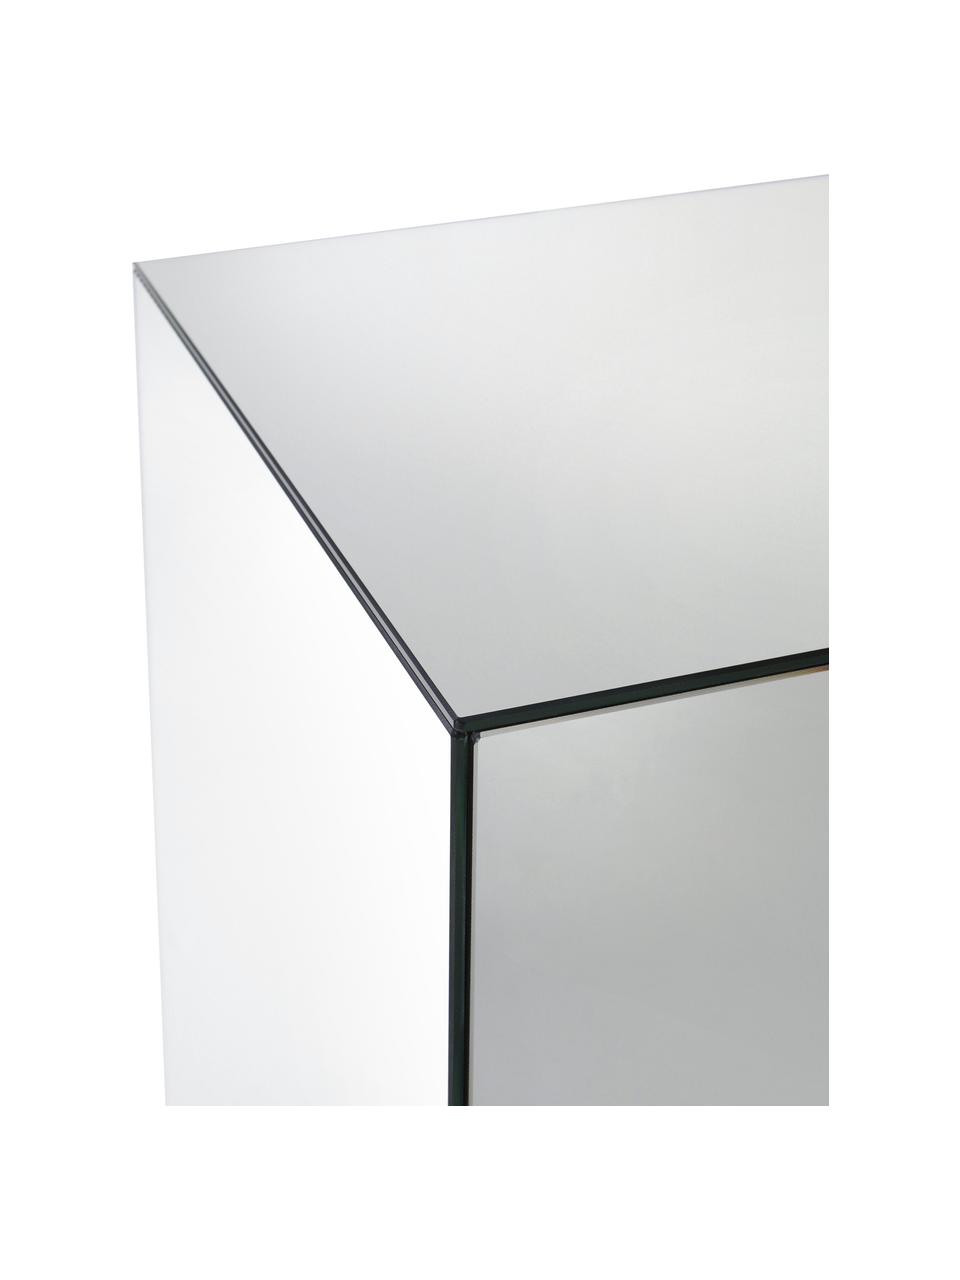 Skleněný dekorativní sloup se zrcadlovým efektem Scrape, MDF deska (dřevovláknitá deska střední hustoty), zrcadlo, Zrcadlové sklo, Š 35 cm, V 90 cm